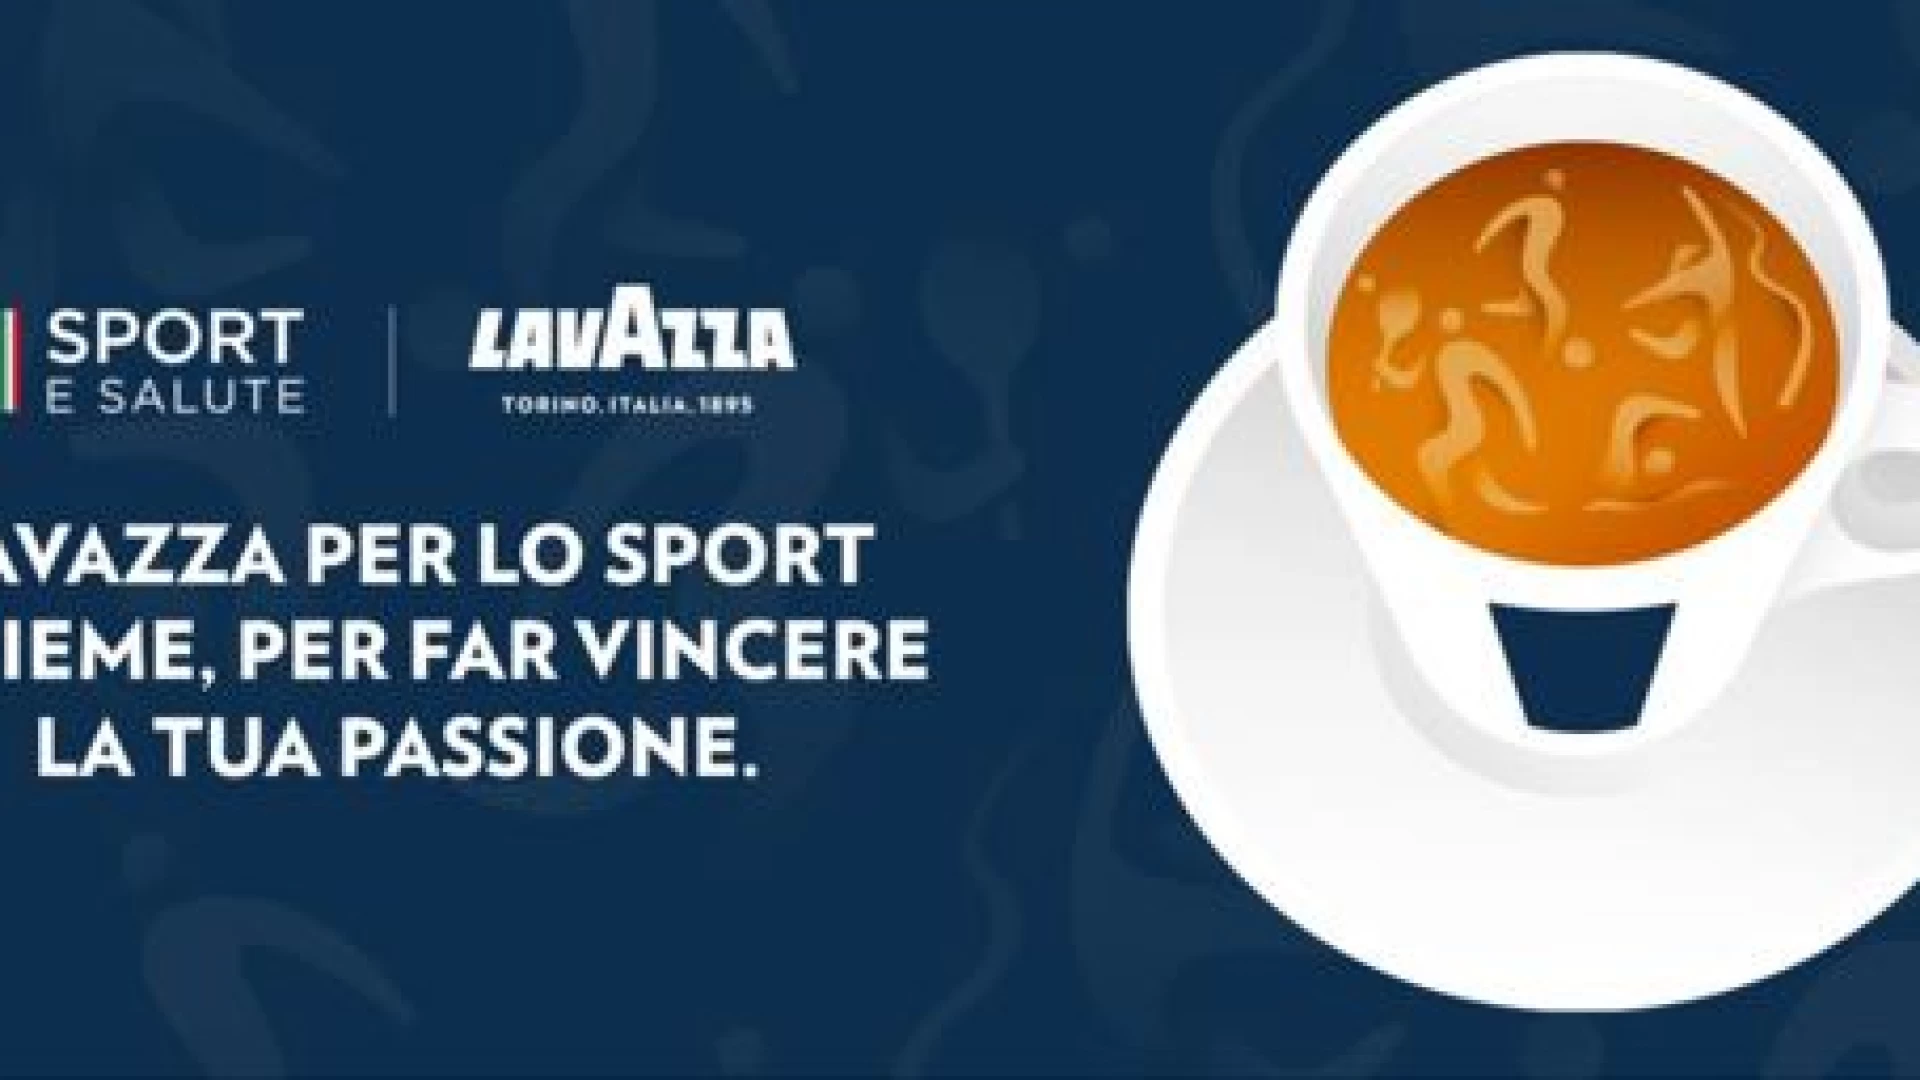 Lavazza per lo Sport continua il progetto dedicato alle società sportive italiane